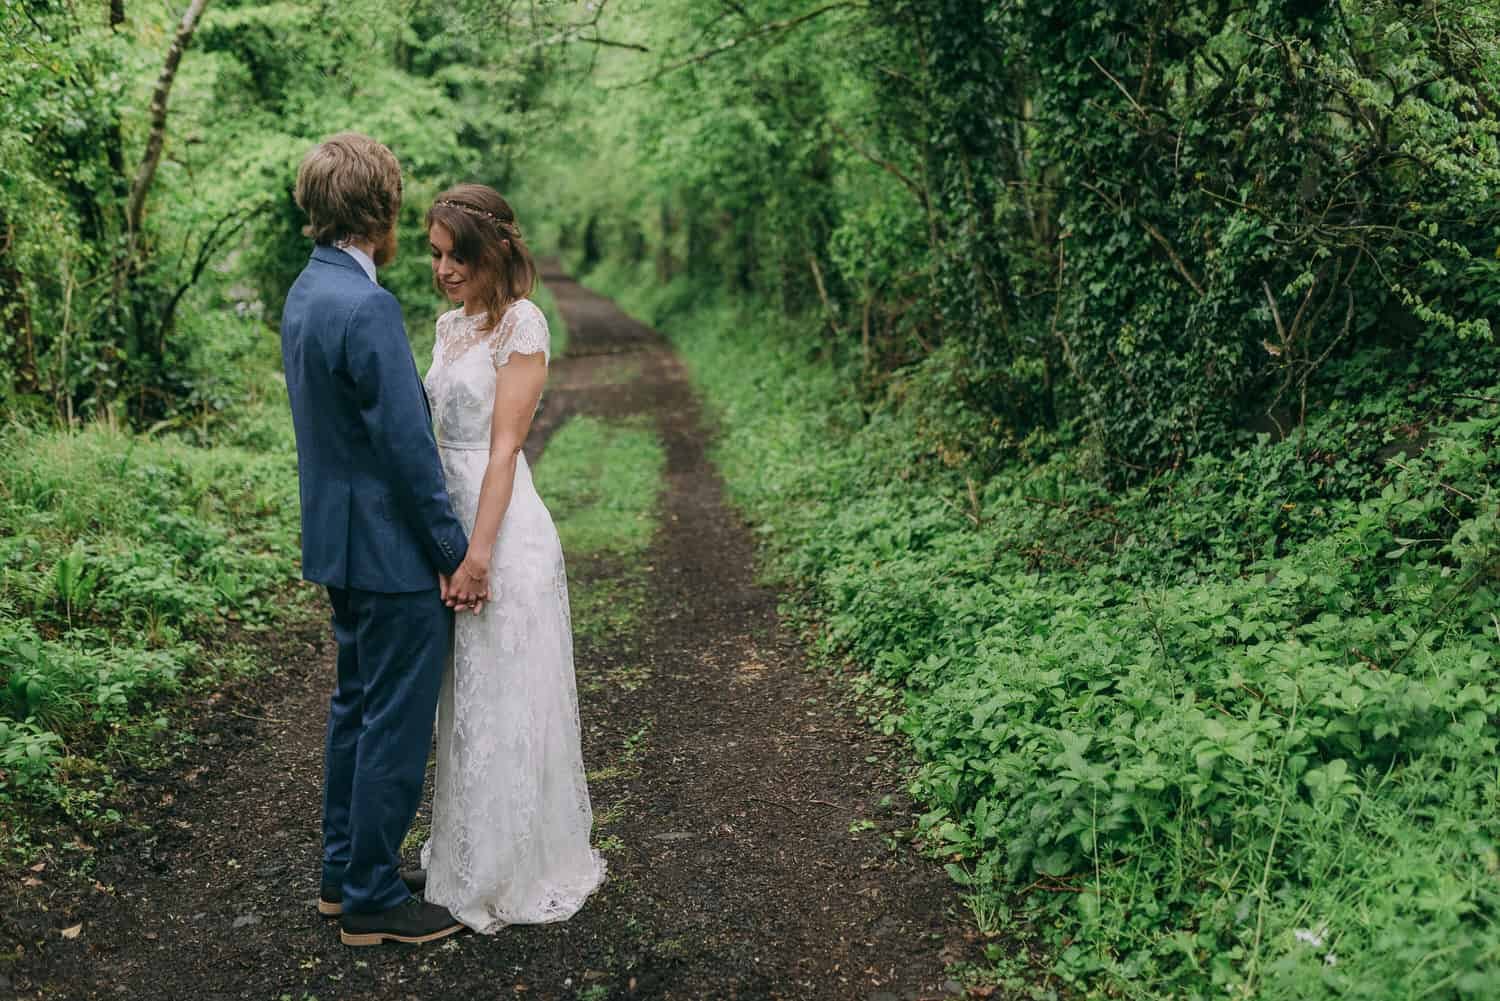 Josie and Rich, Great Barn Devon wedding, Devon wedding, Barn wedding, Chris Scuffins Photography